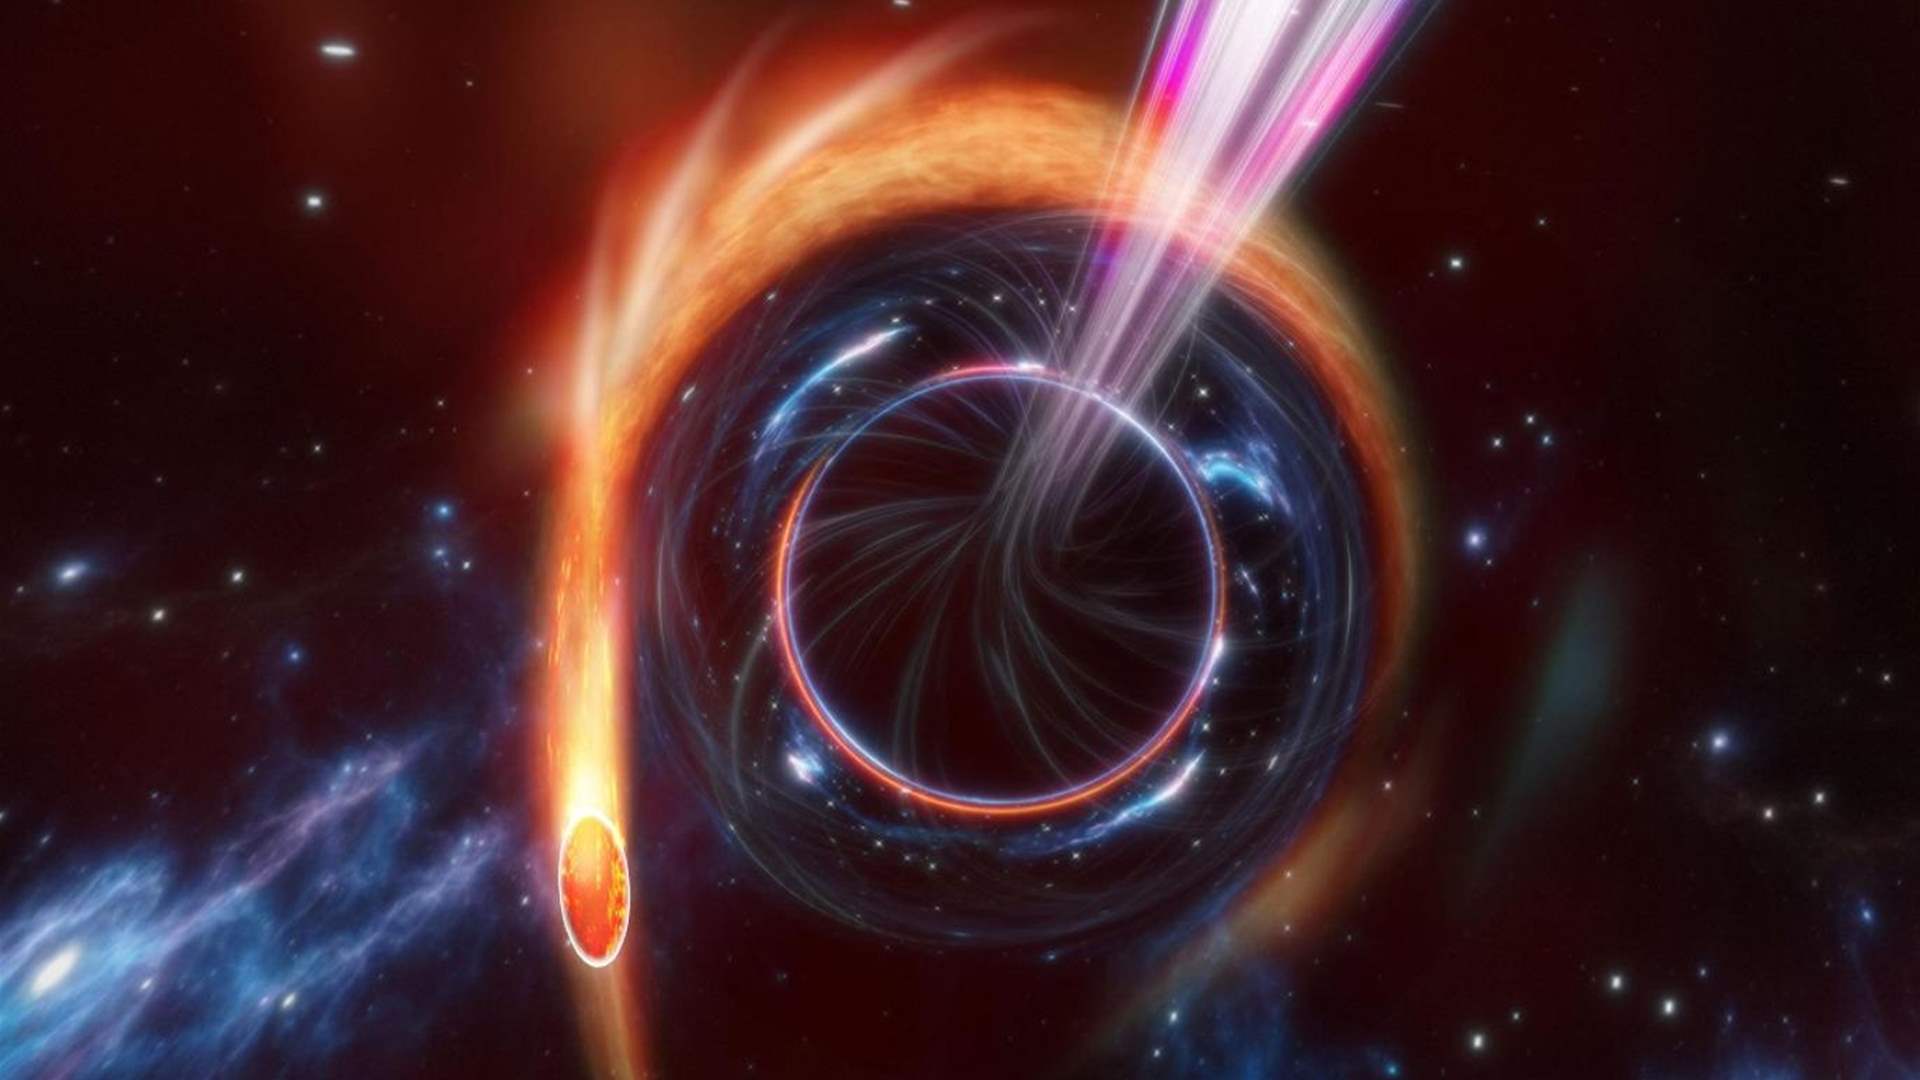 الثقب الأسود الهائل في درب التبانة مزنّر بمجالات مغناطيسية قوية